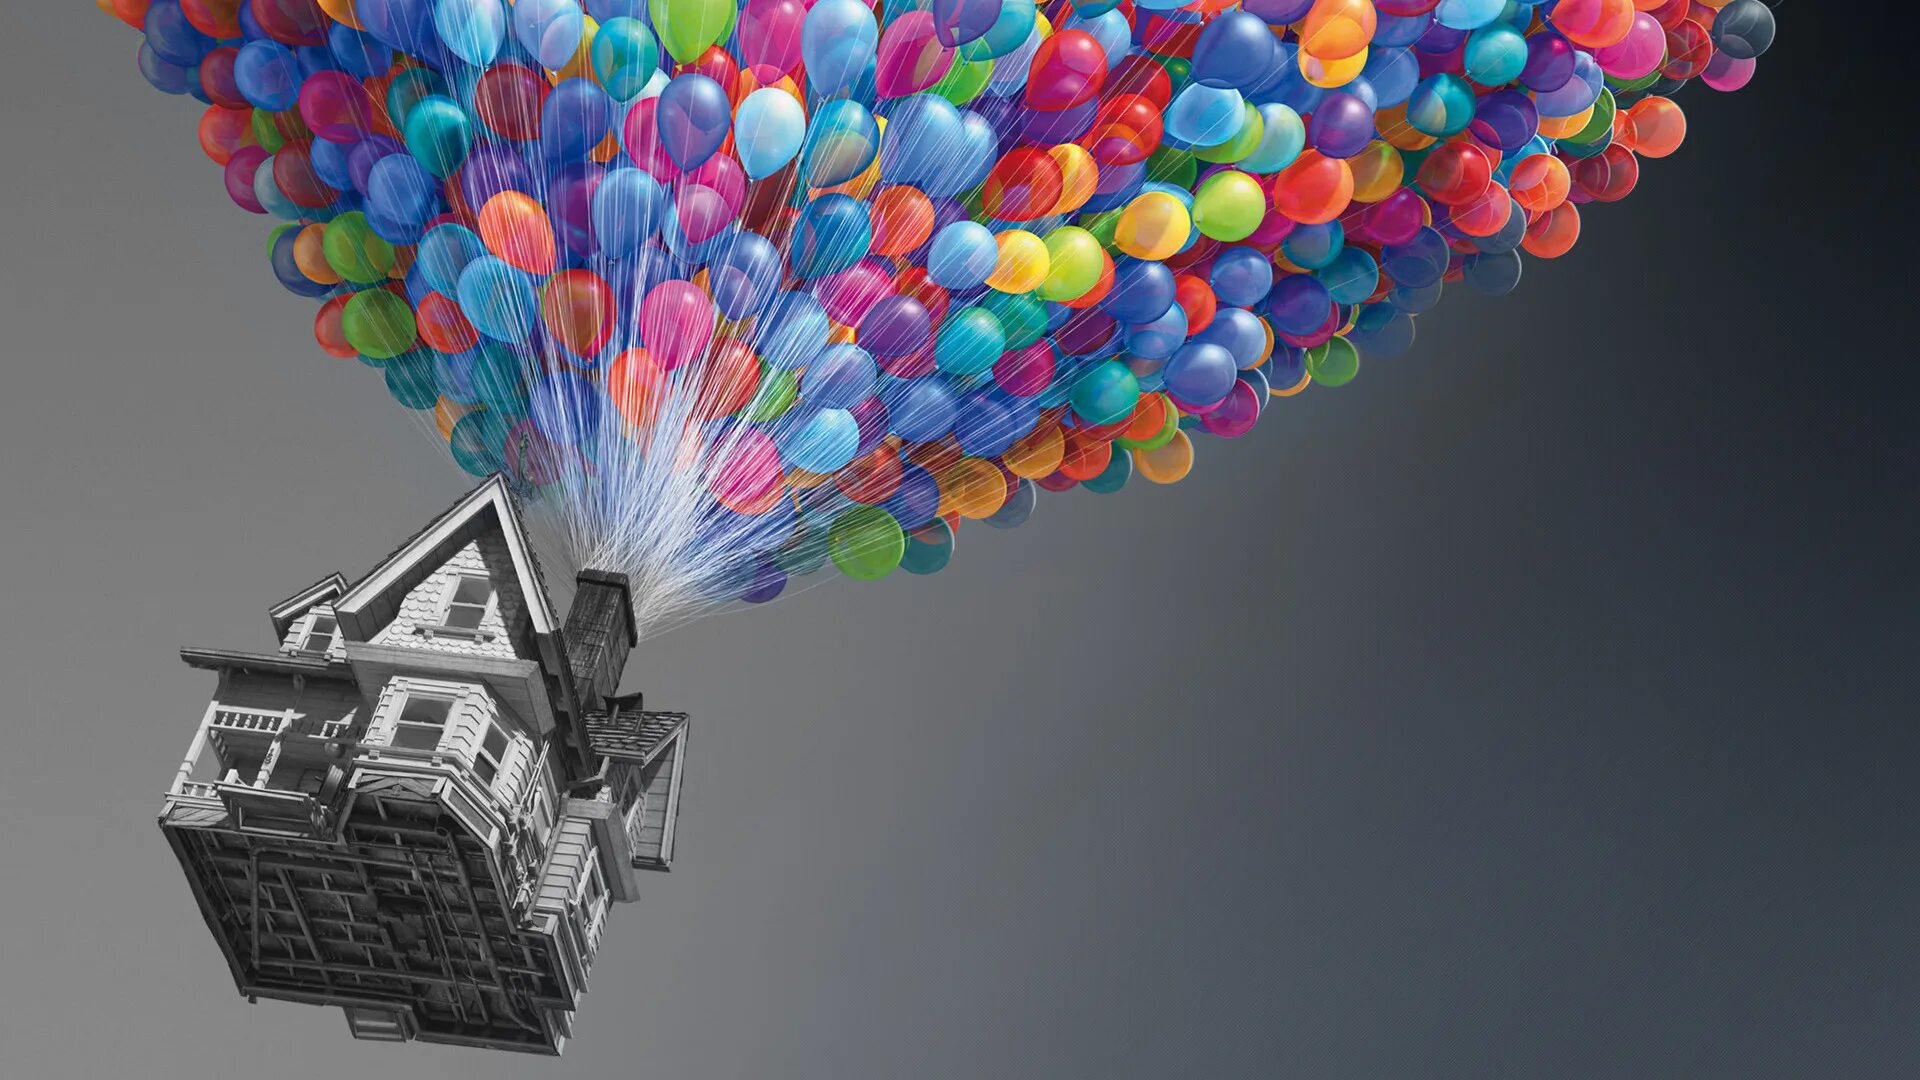 Дом на воздушных шариках. Воздушный шарик. Летающий дом на воздушных шарах. Домик на воздушных шариках. Дом с воздушными шарами.